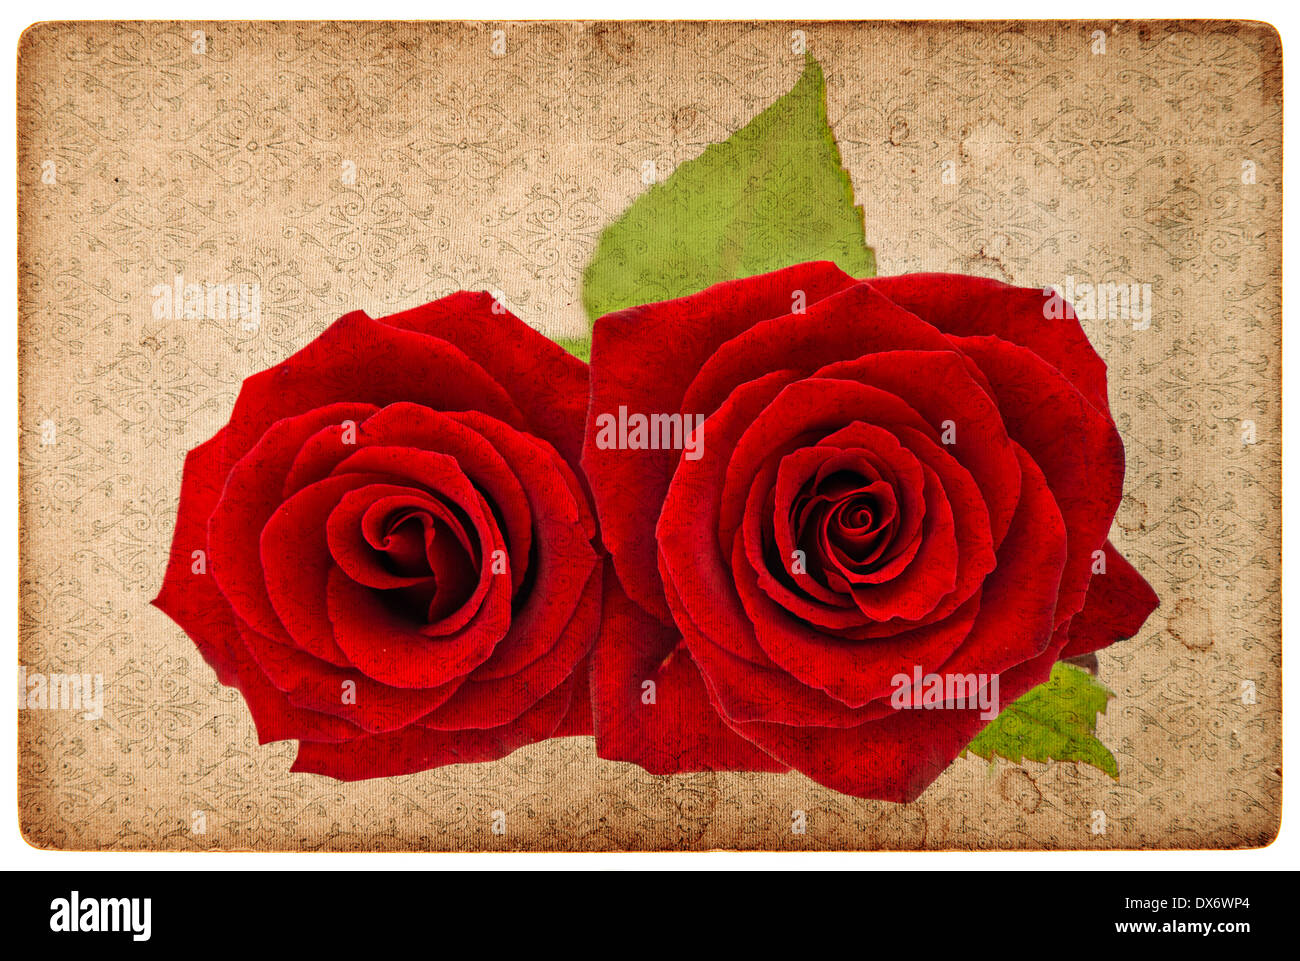 Carte vintage grunge paper board avec roses rouges Banque D'Images